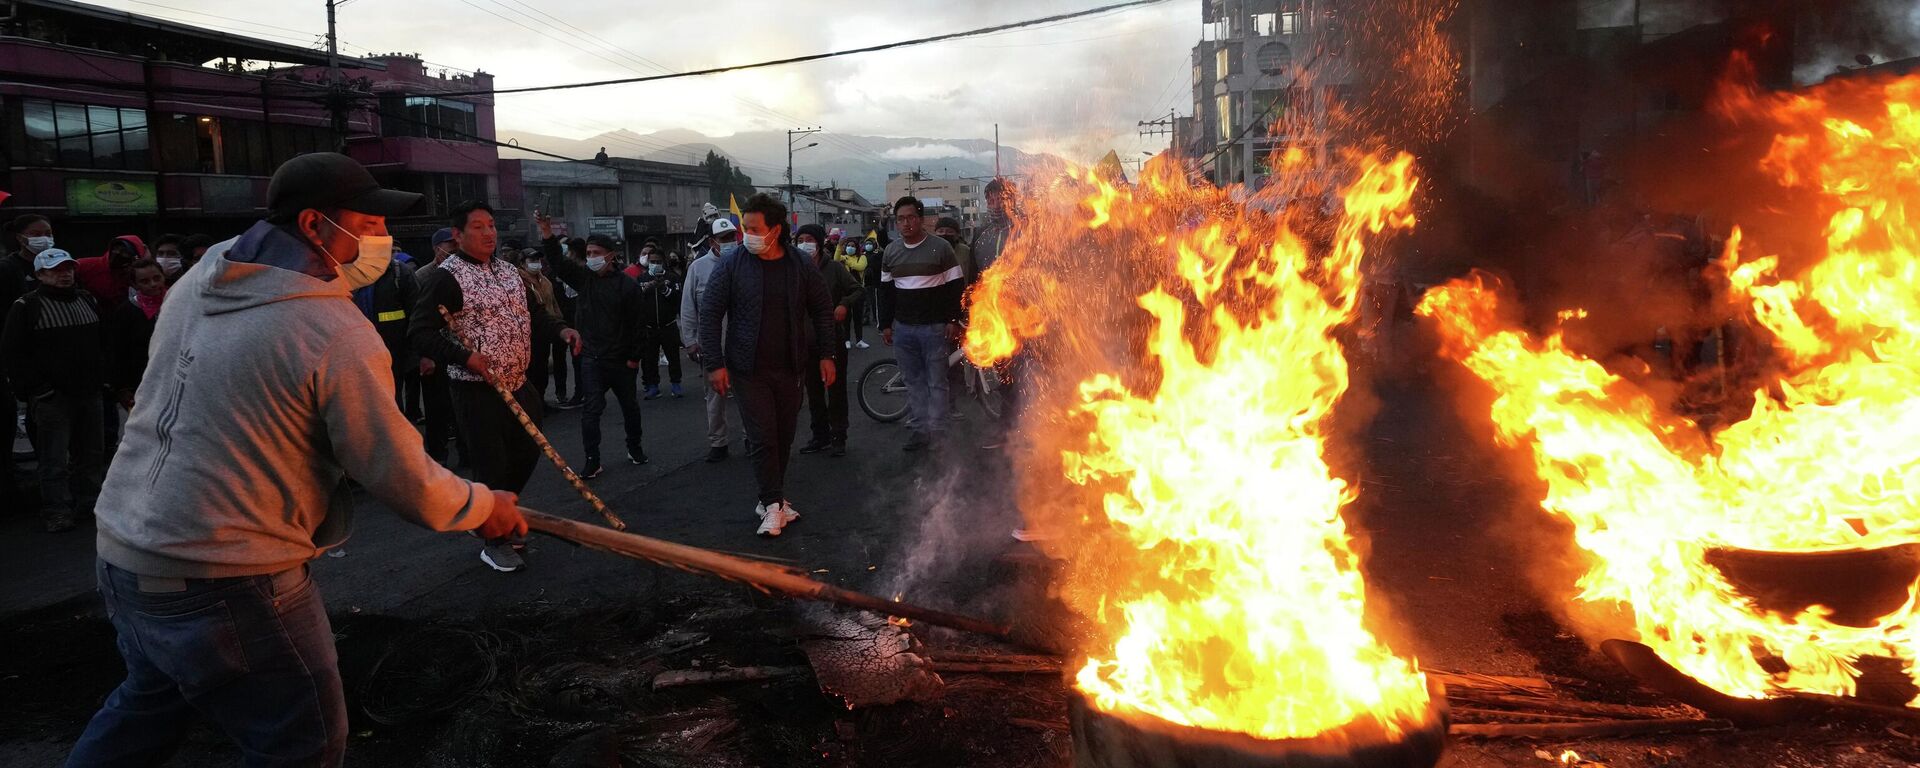 Manifestantes protestam contra o governo de Guillermo Lasso com uma barricada em chamas, em Quito, no Equador, em 20 de junho de 2022 - Sputnik Brasil, 1920, 21.06.2022